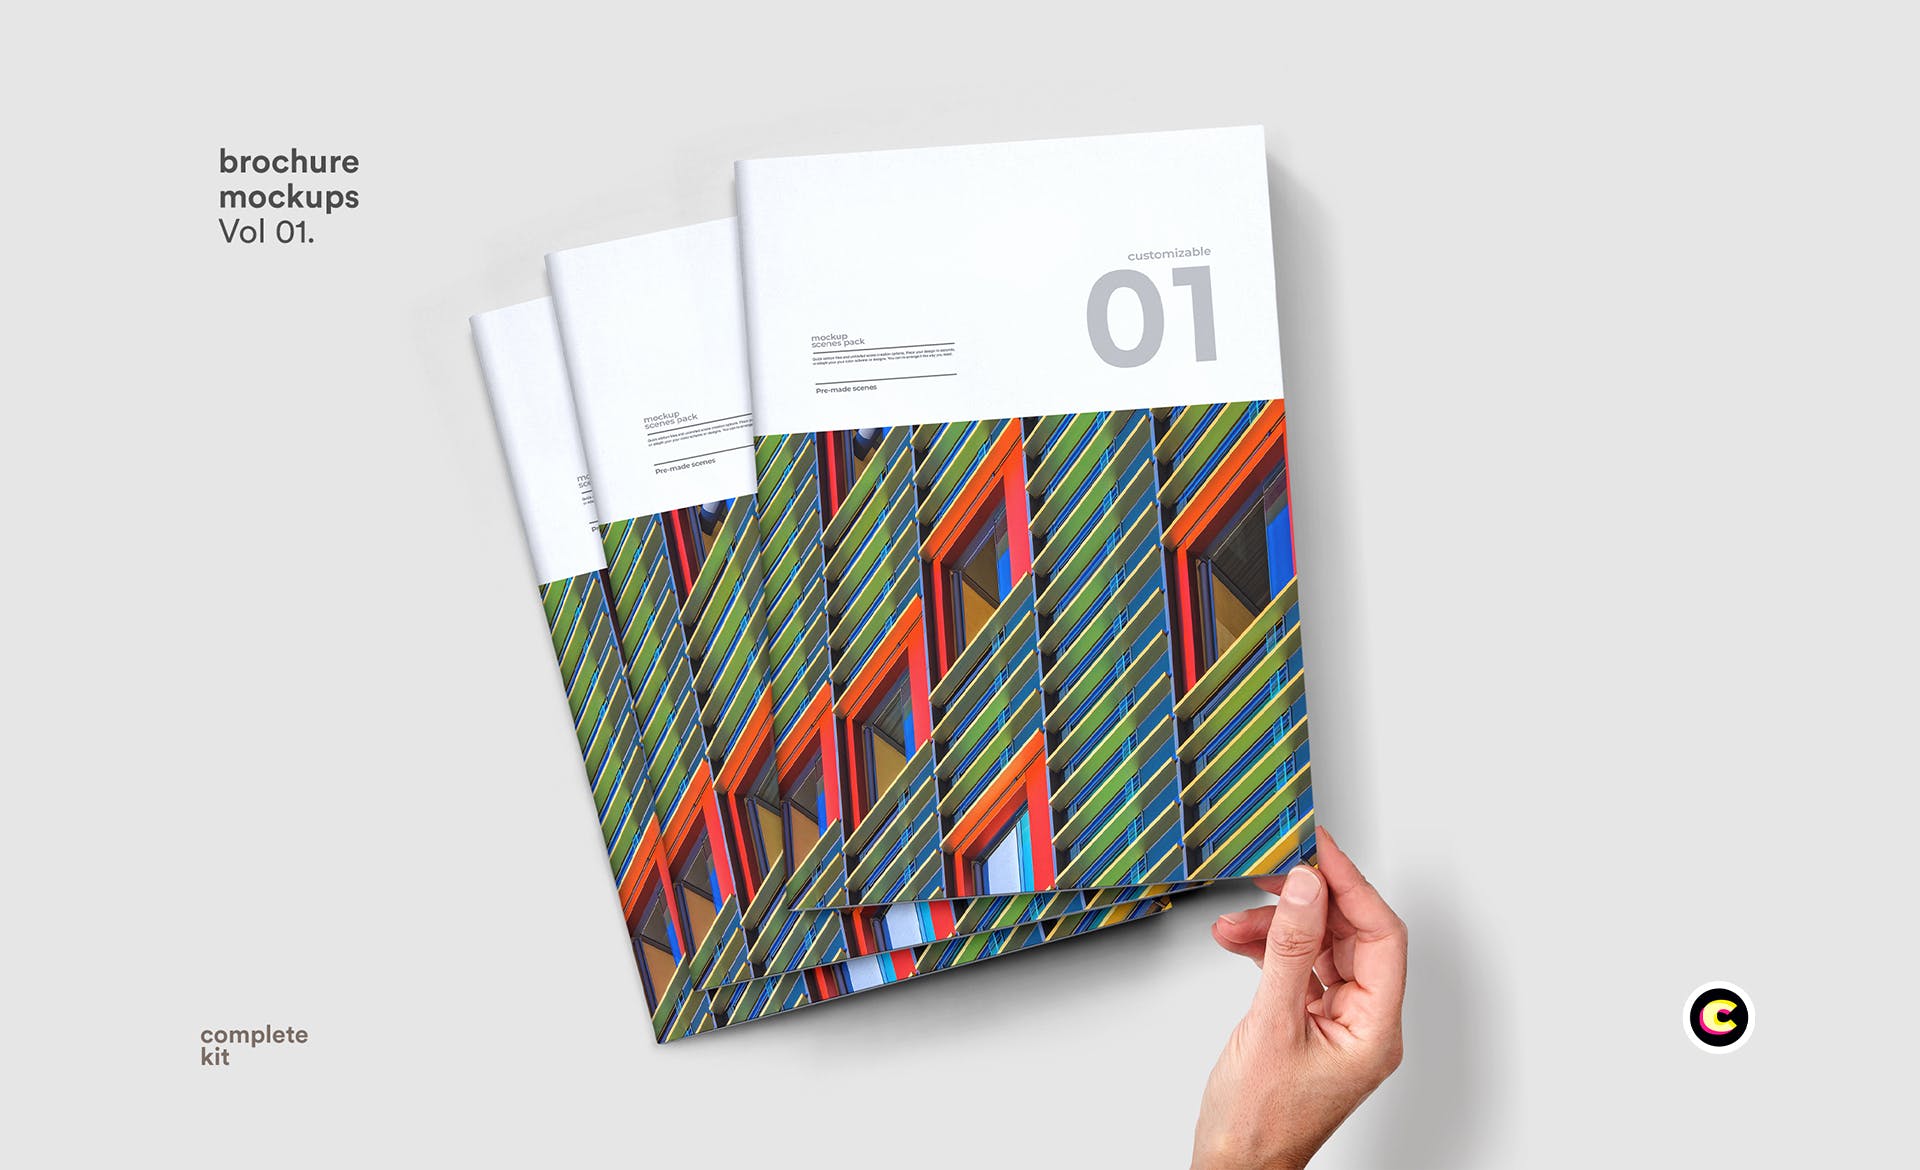 企业画册封面&版式设计效果图样机第一素材精选 Brochure Mock Up插图(1)